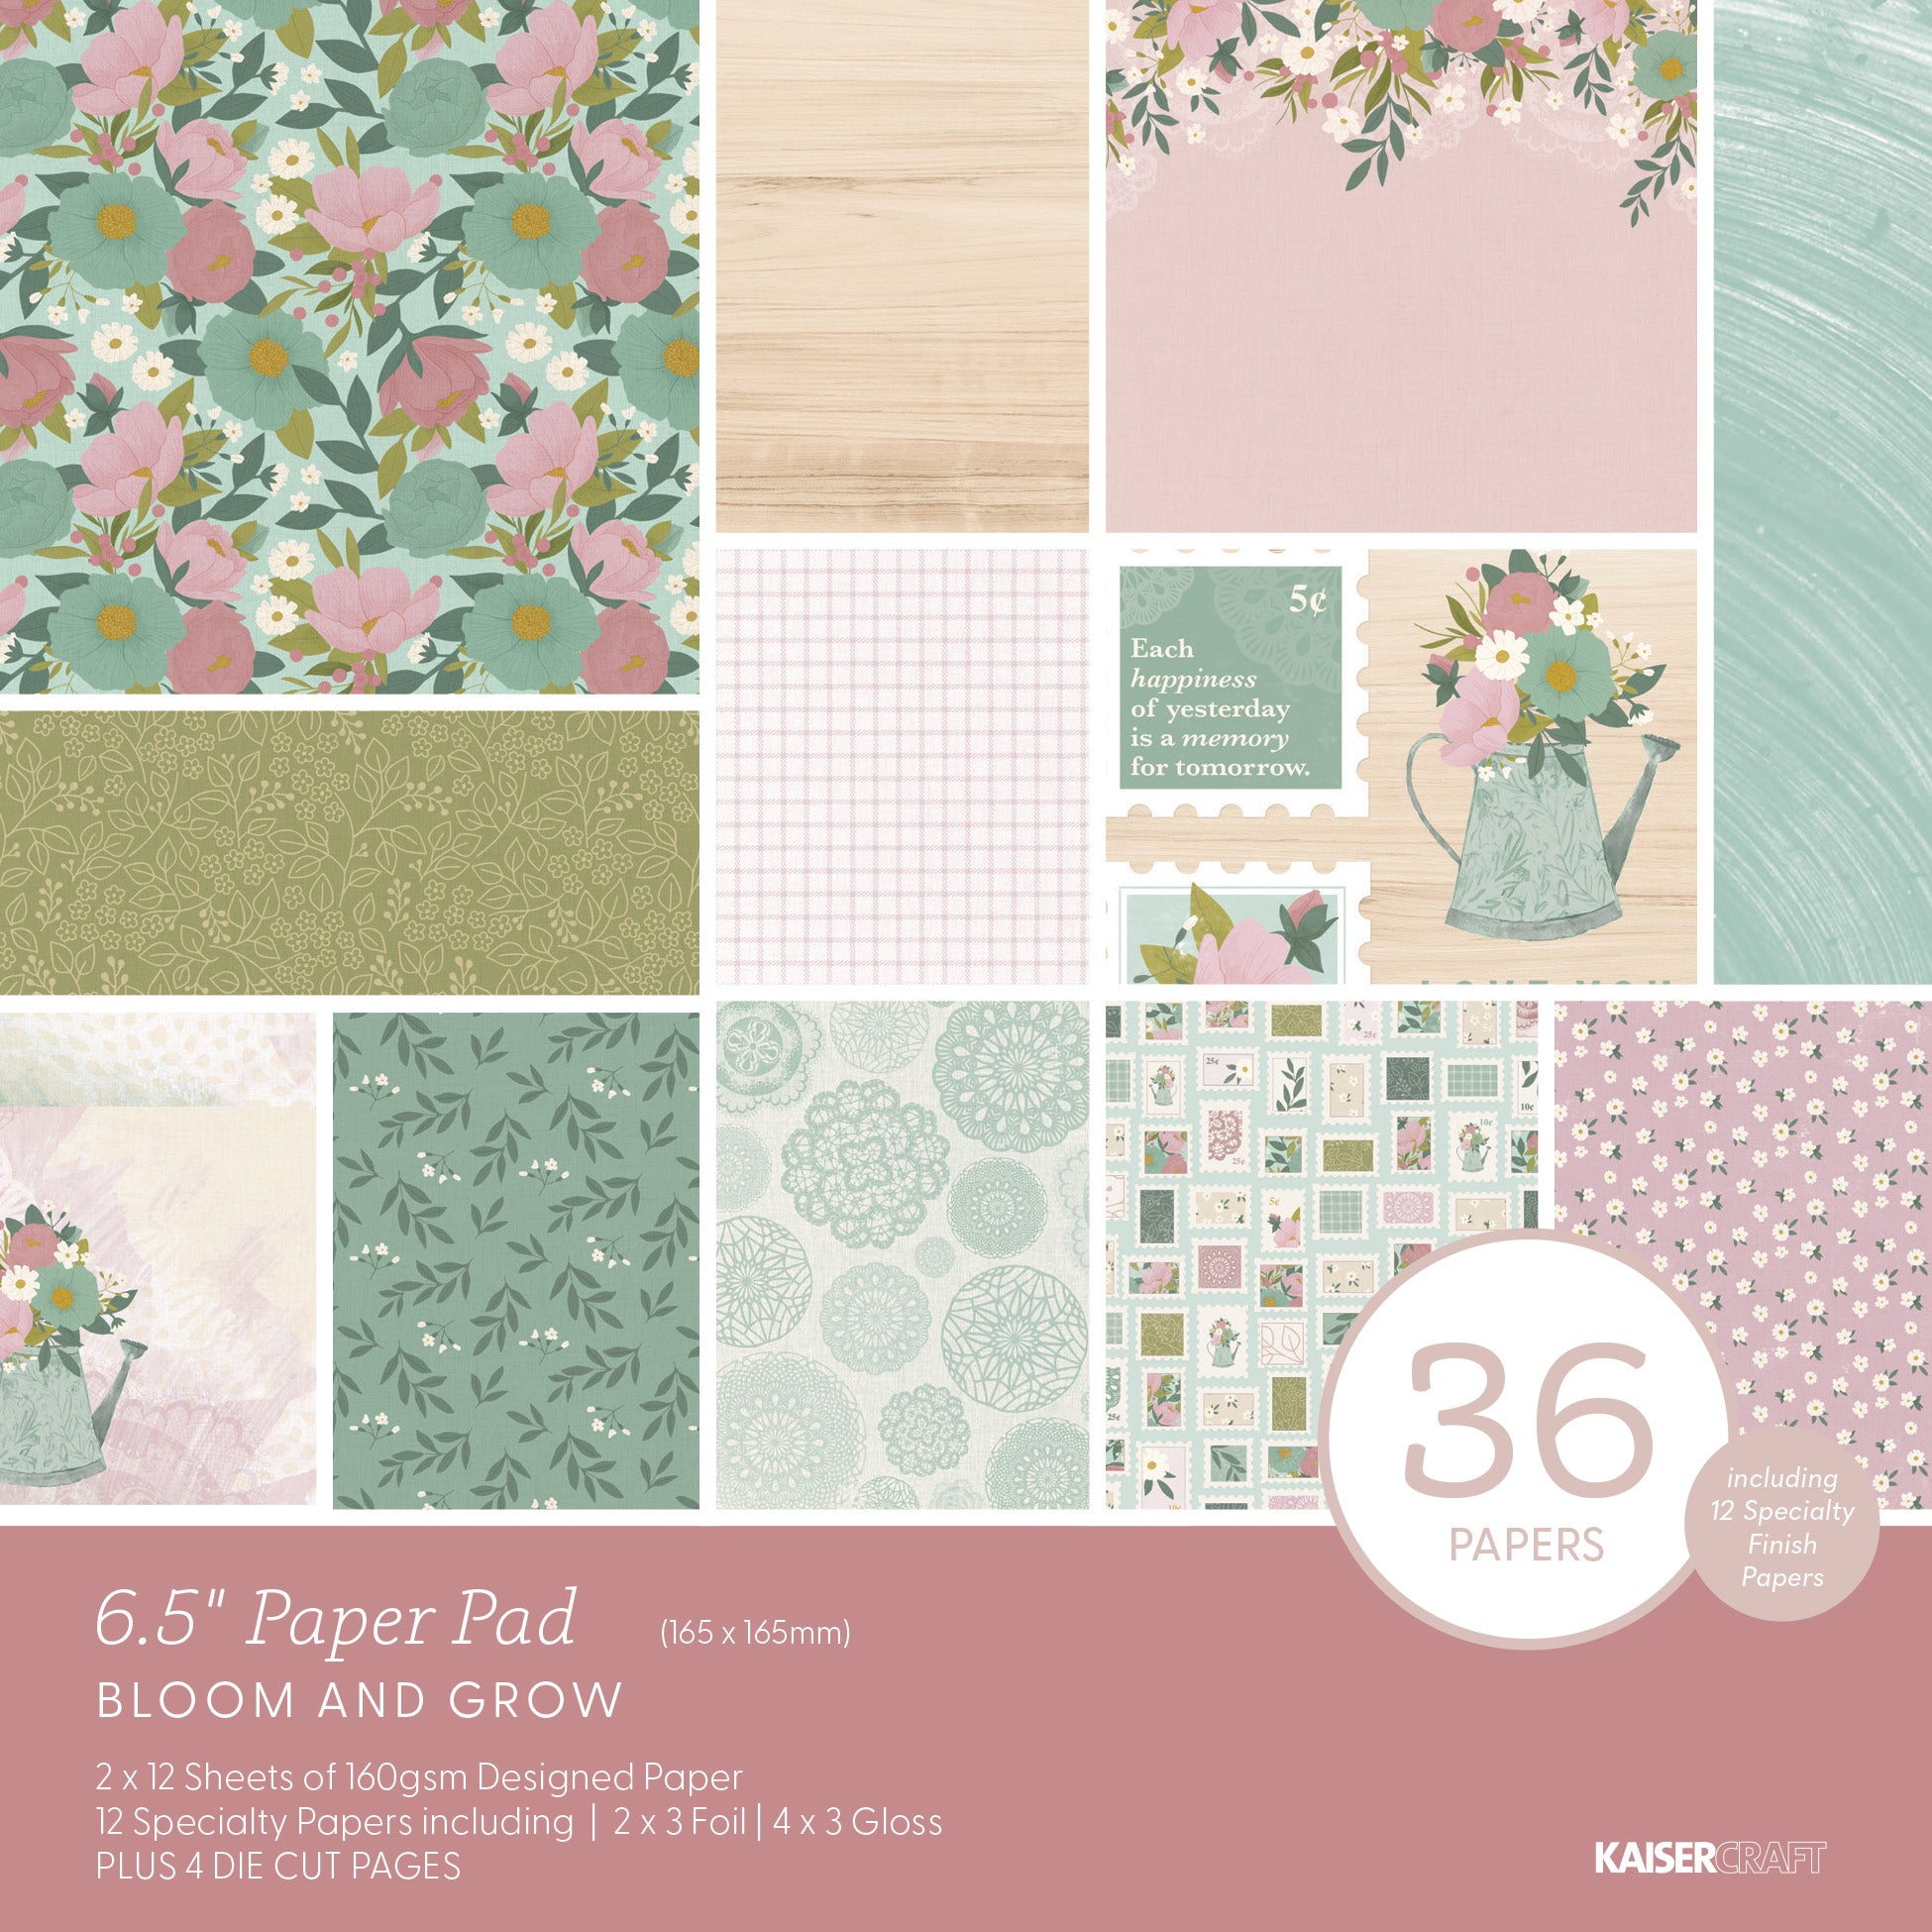 Bloom & Grow 6.5 Paper Pad